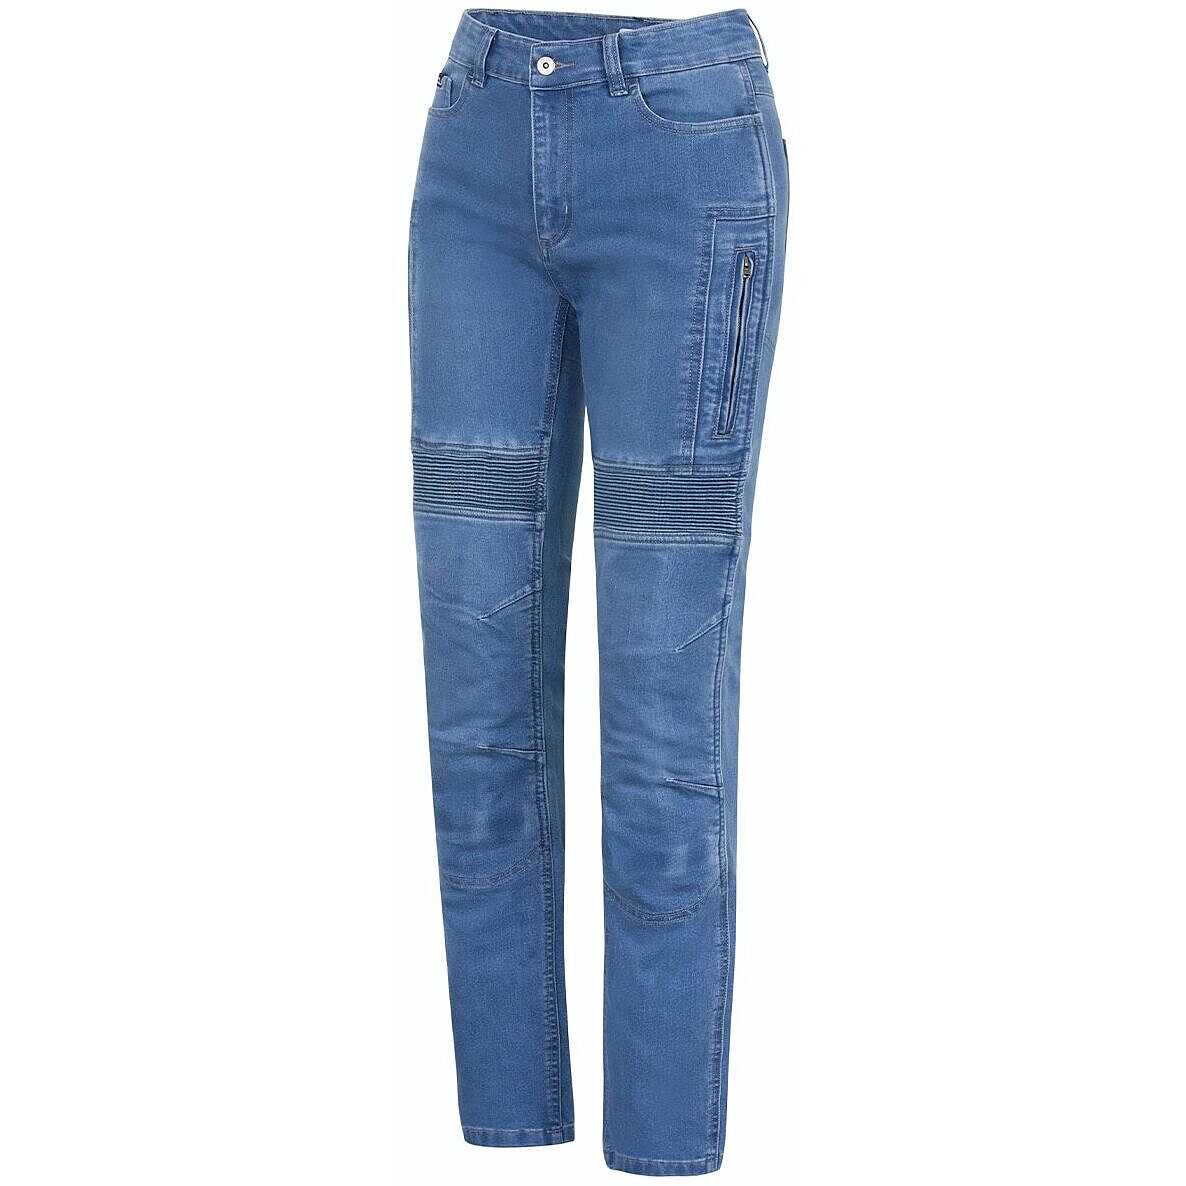 Jeans Moto Da Uomo Tecnici Elasticizzati OJ UPGRADE 2 Vendita Online 